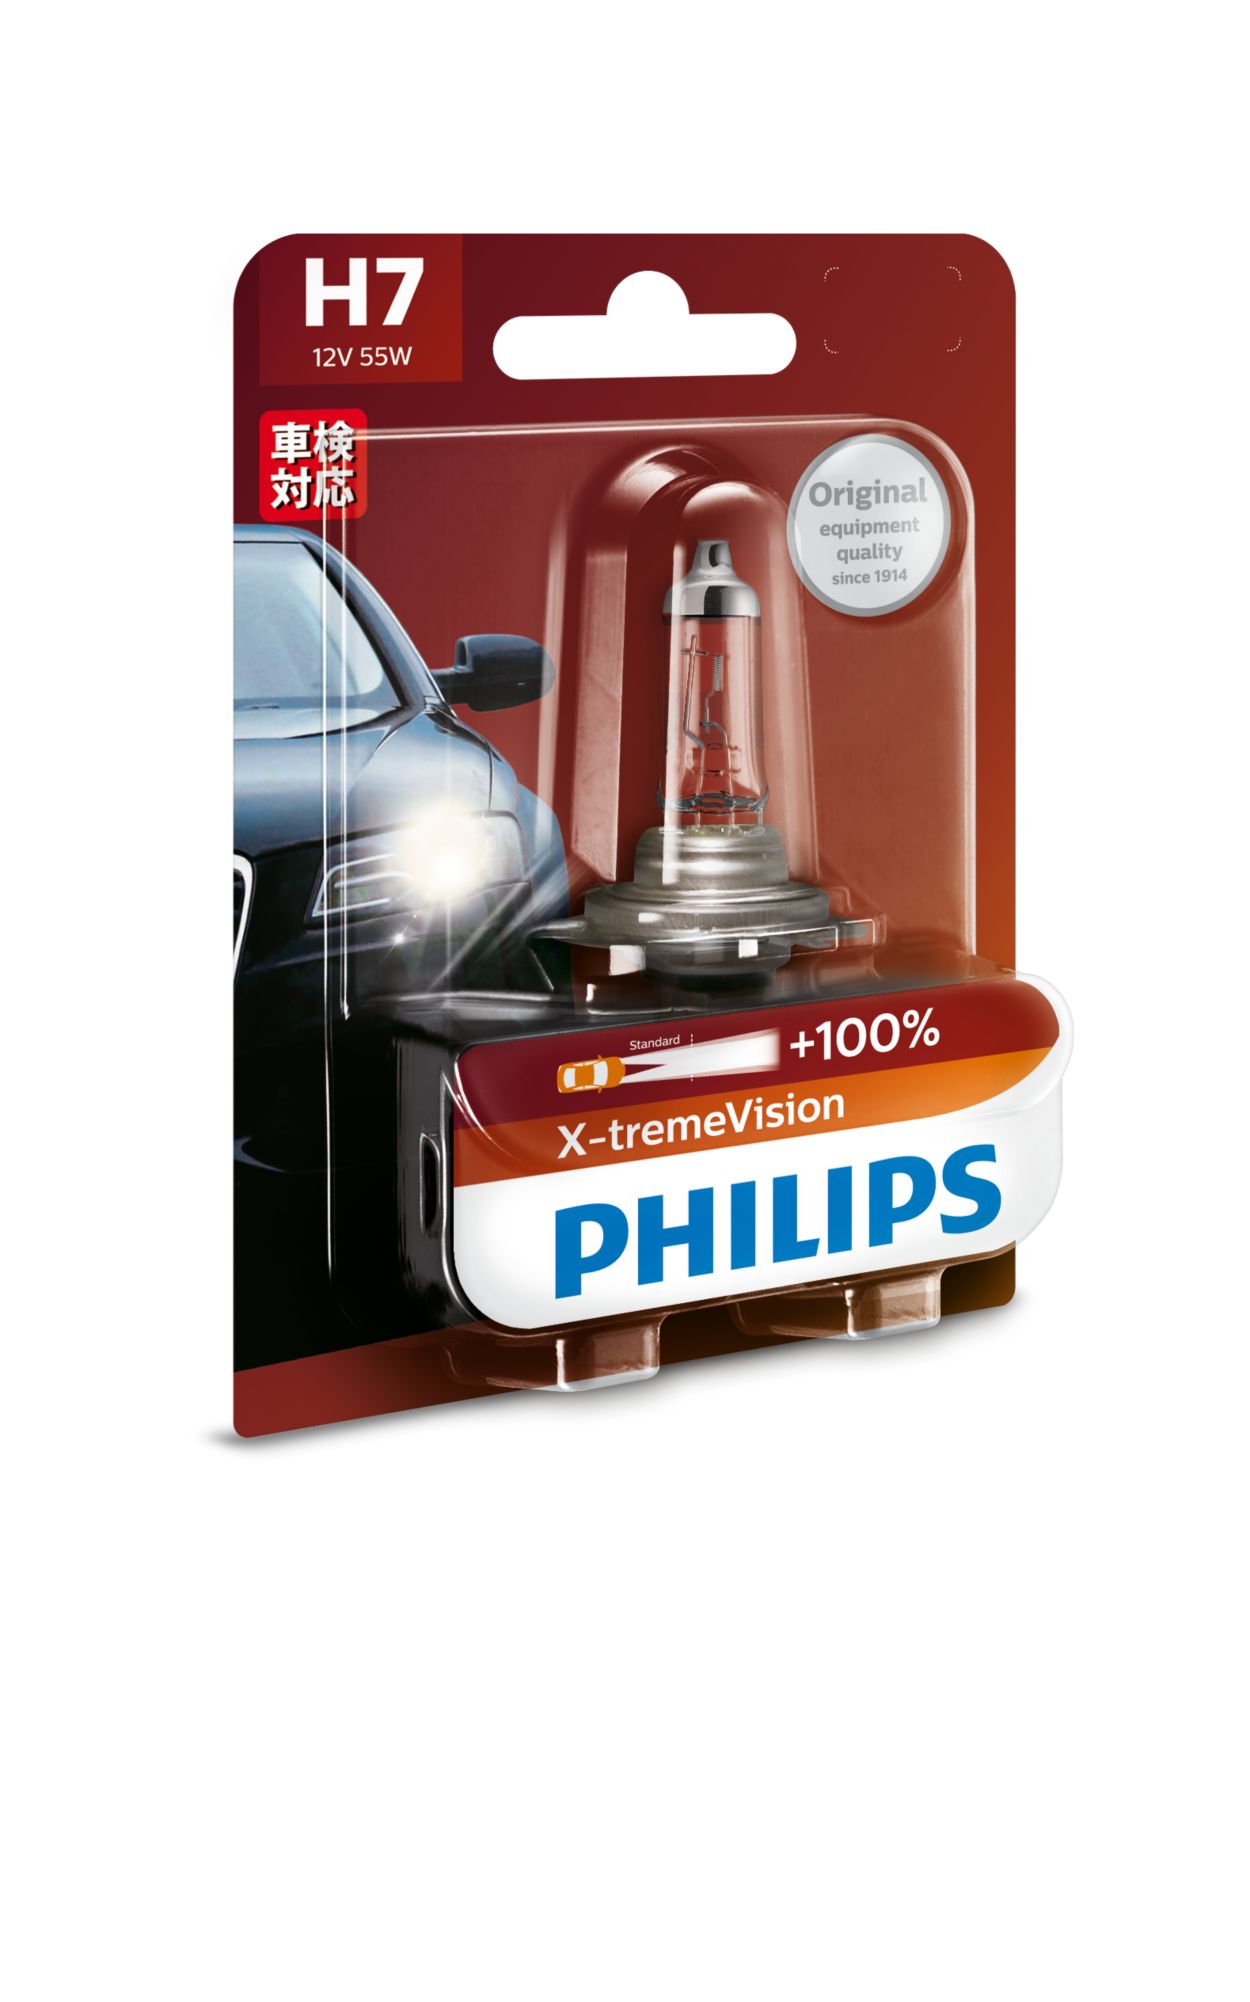 Philips H7 Pro Quartz bulb 12V 55W 12972PROQC1 (1 Pack)